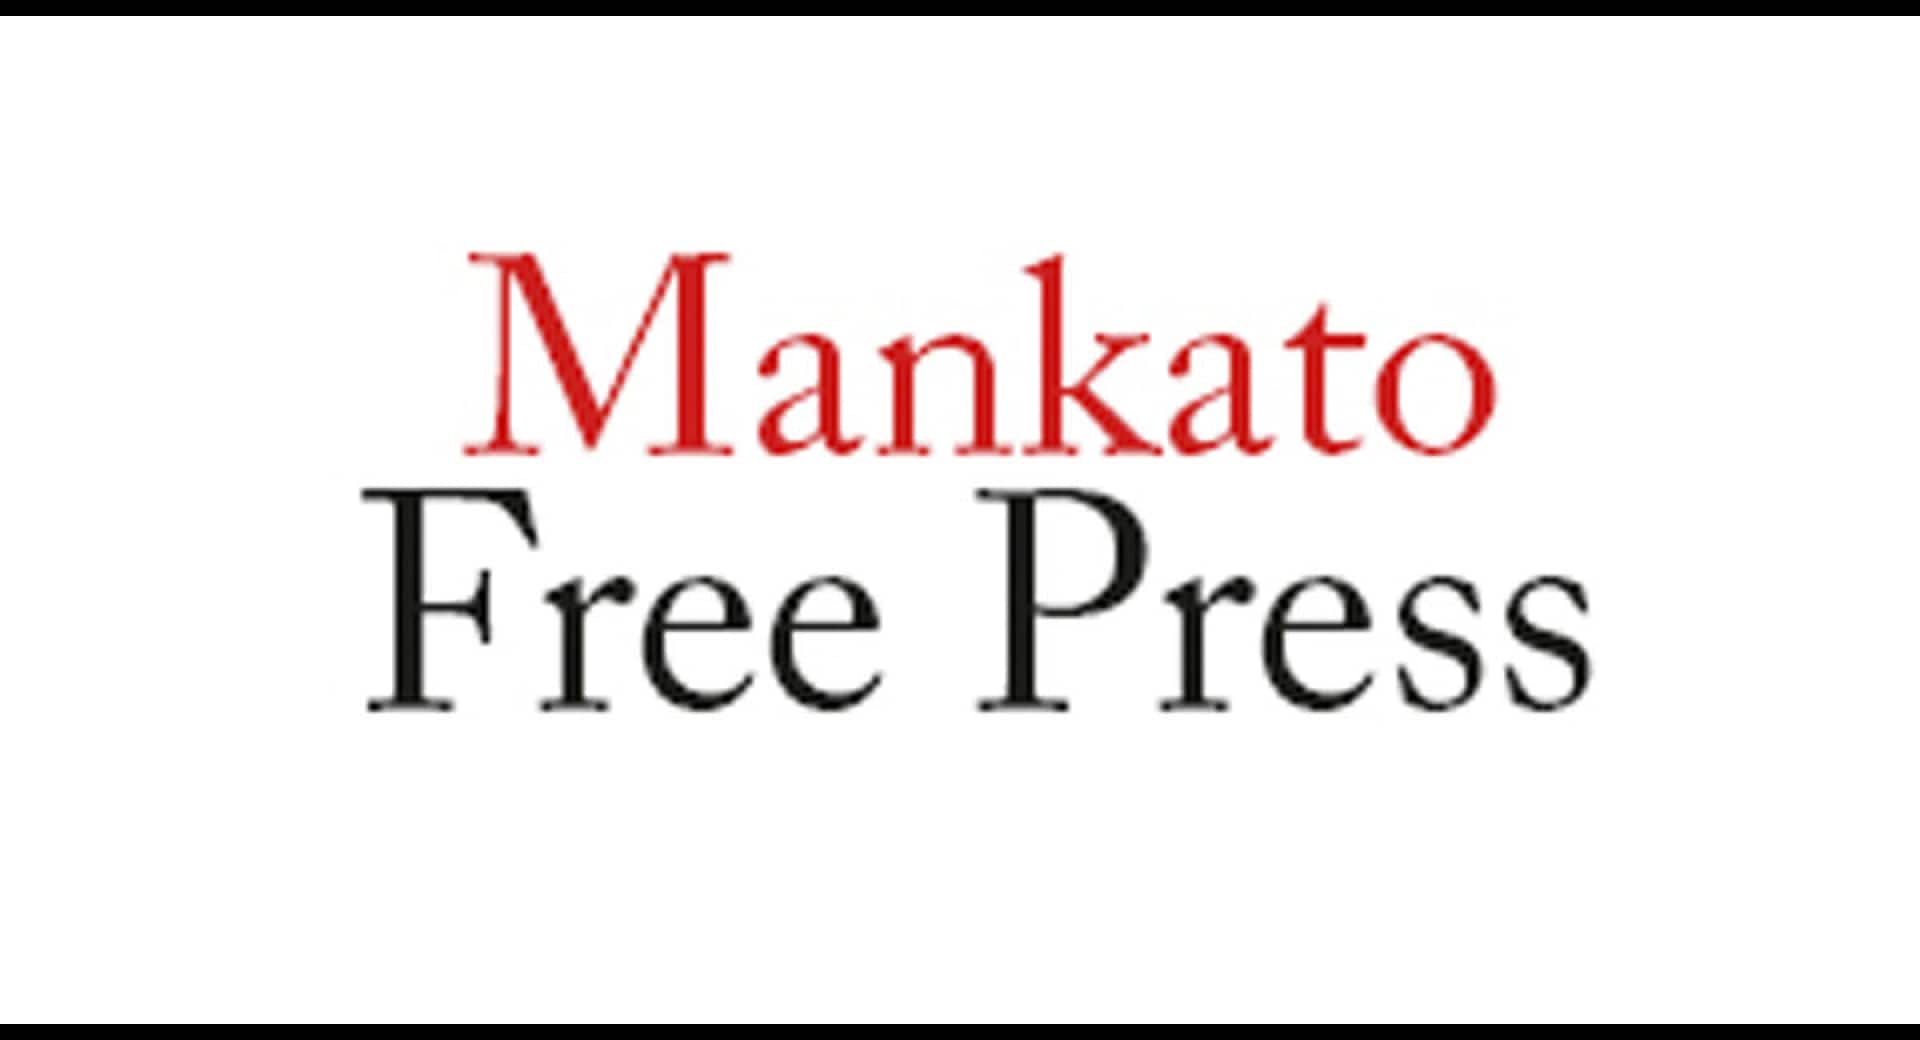 The Mankato Free Press - 